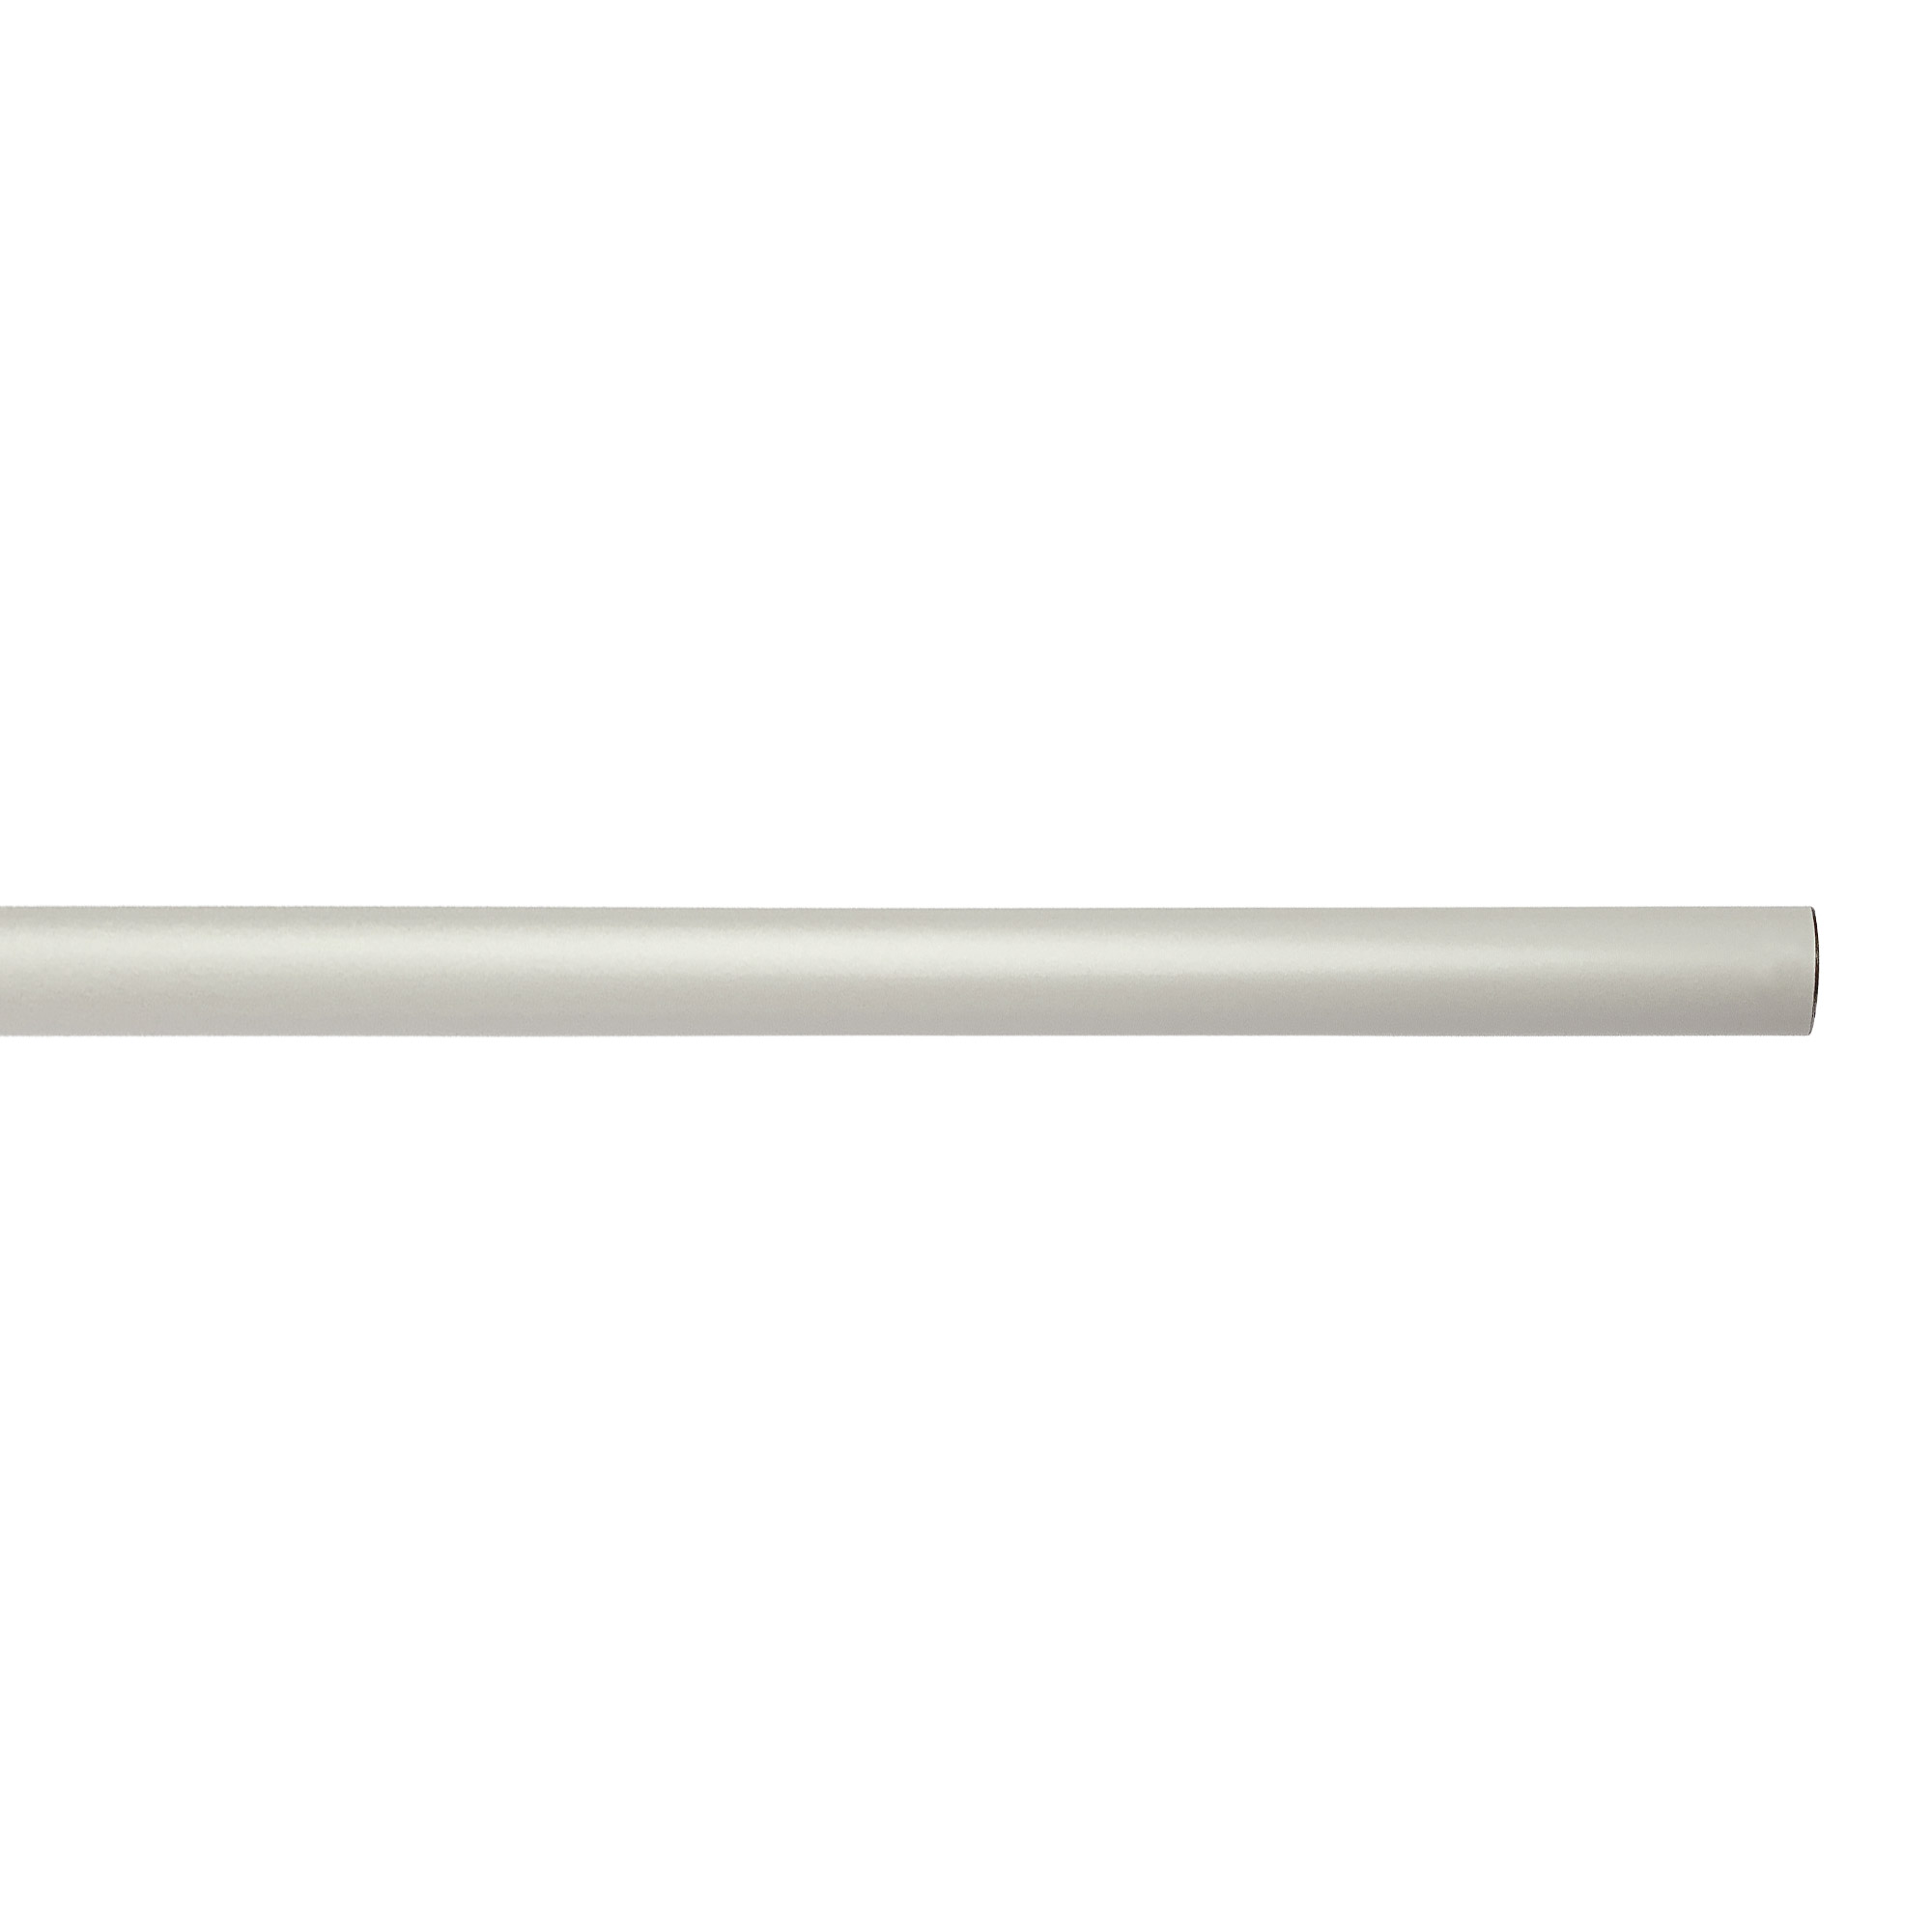 アイアンハンガーパイプ E型-天井吊タイプ H500 ホワイト PS-HB008-62-G141 水平パイプは3サイズから2本、それぞれお好きな長さを選択可能です